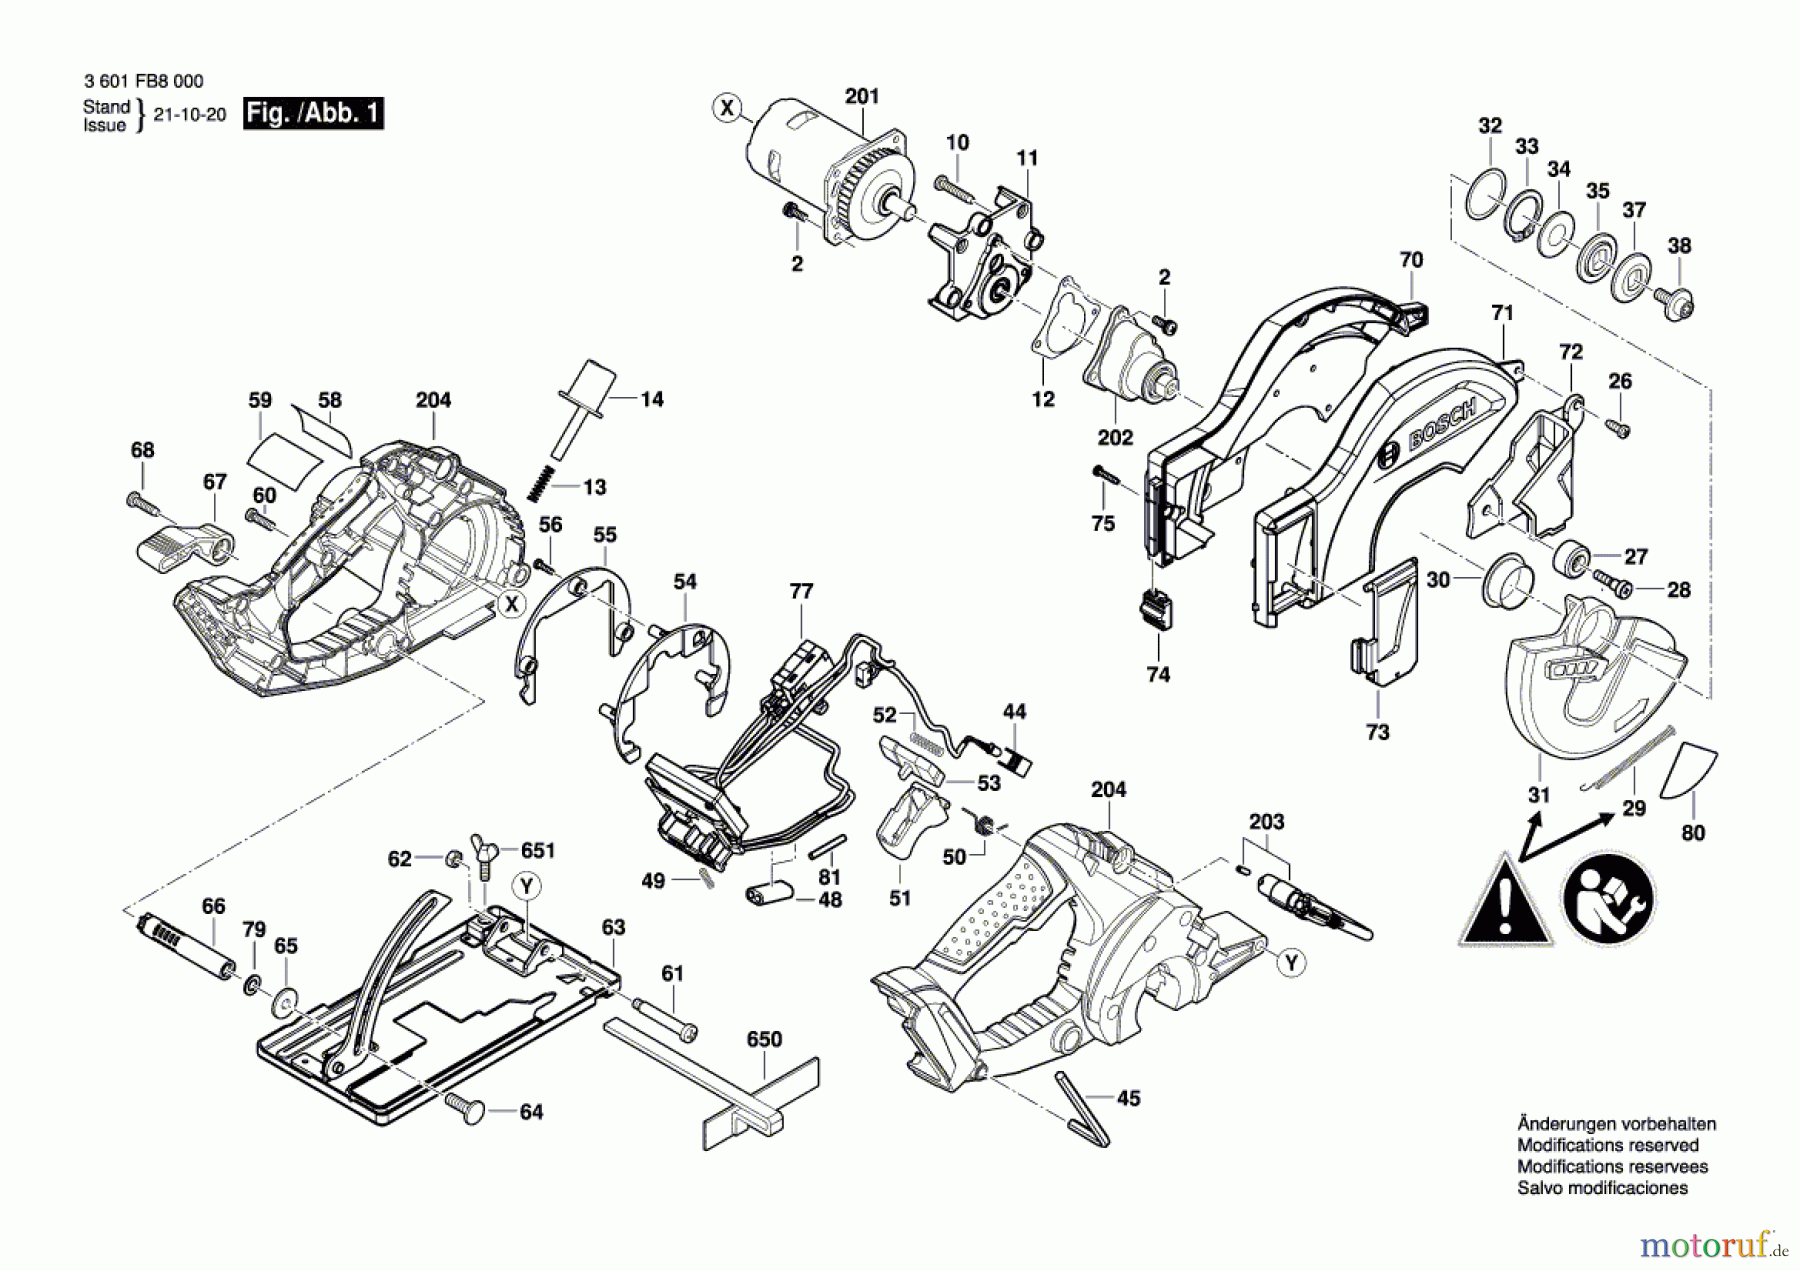  Bosch Werkzeug Kreissäge GKM 18V-50 Seite 1